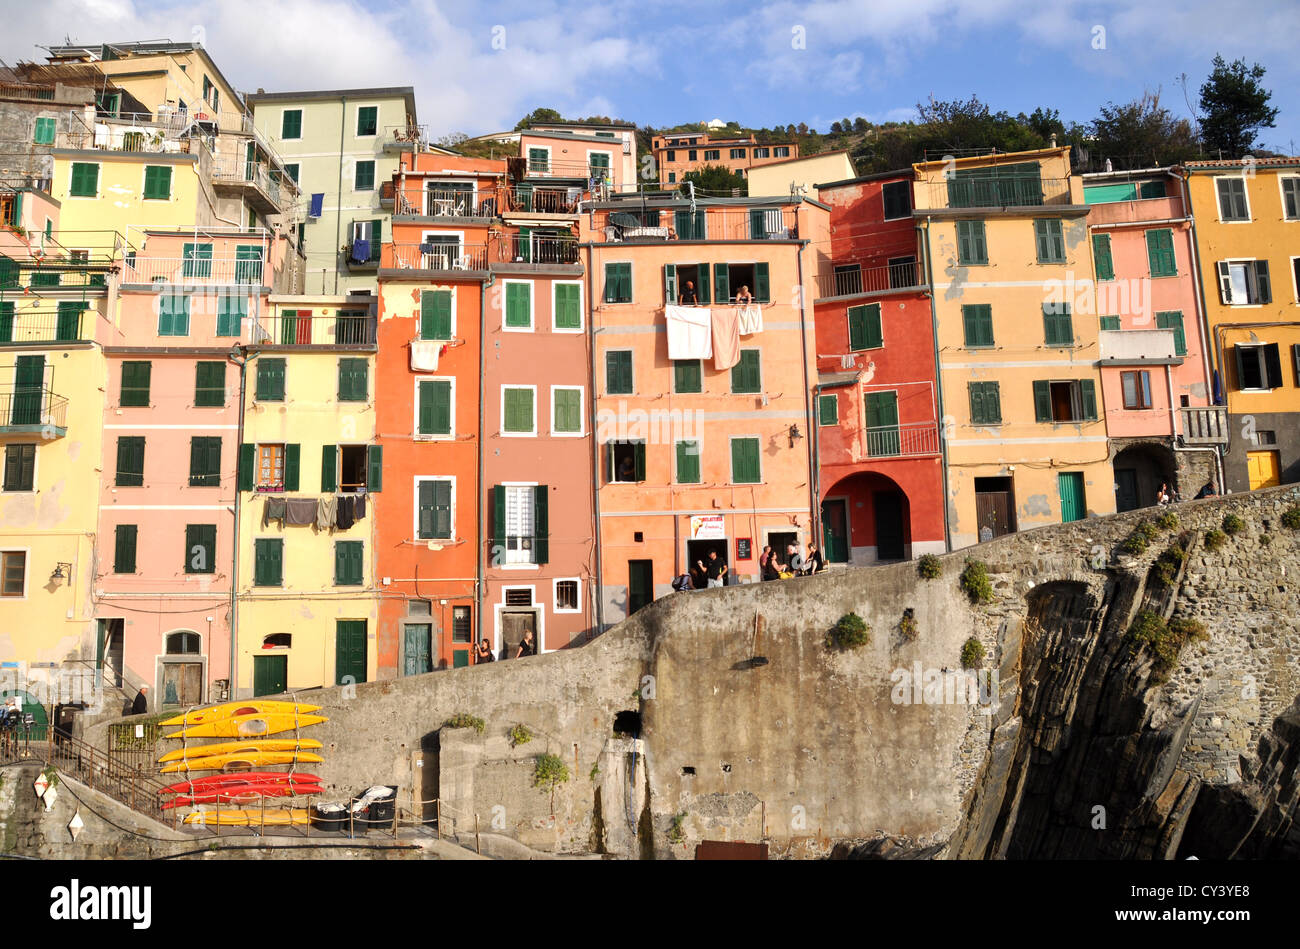 The village of Riomaggiore, Cinque Terre, Liguria, Italy Stock Photo